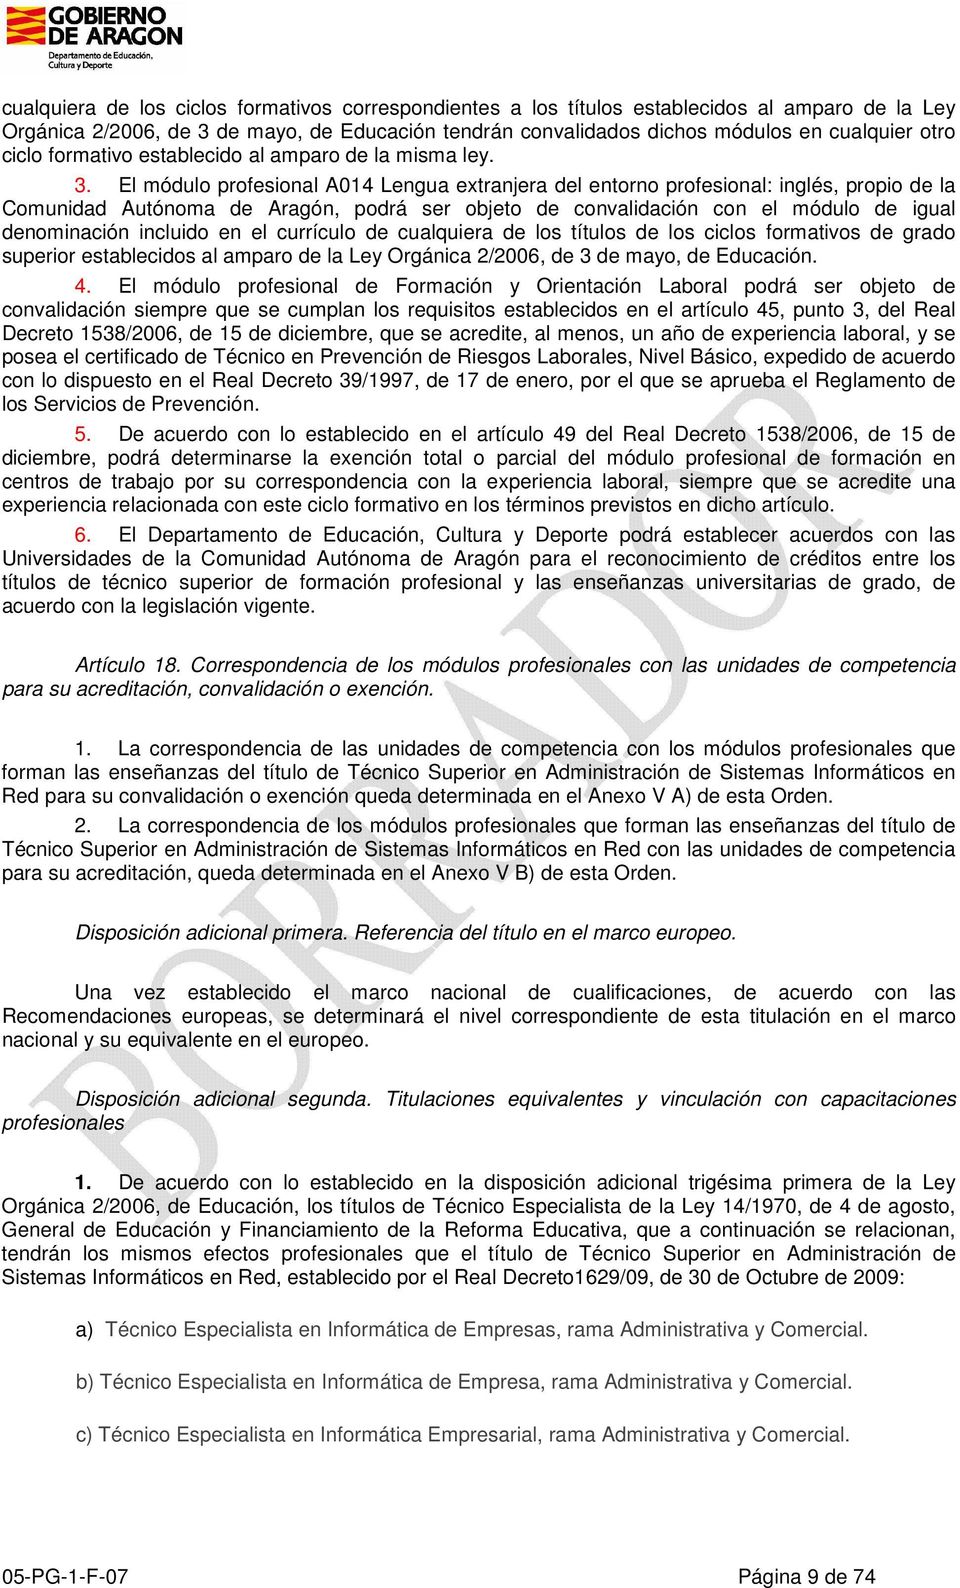 El módulo profesional A014 Lengua extranjera del entorno profesional: inglés, propio de la Comunidad Autónoma de Aragón, podrá ser objeto de convalidación con el módulo de igual denominación incluido